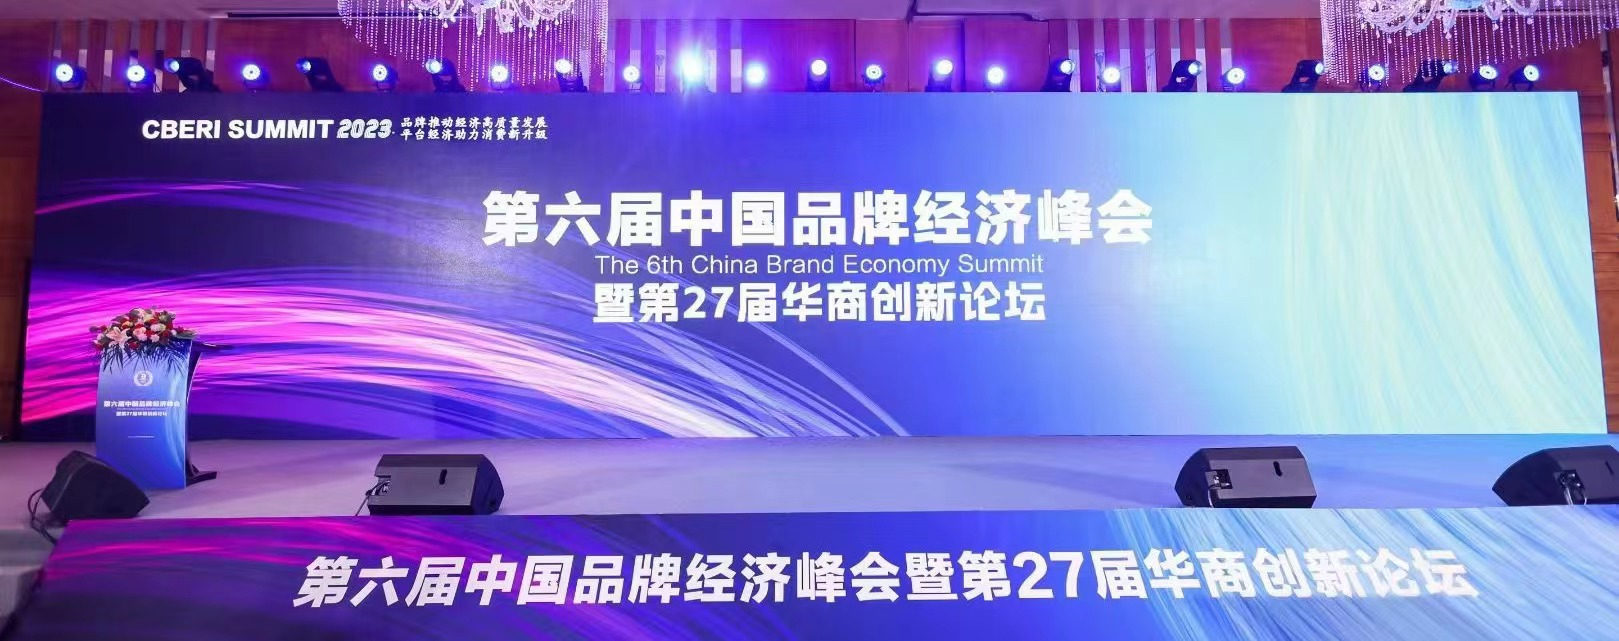 企业战略顶层设计专家 千海 受邀 中国品牌经济峰会分享企业品牌战略